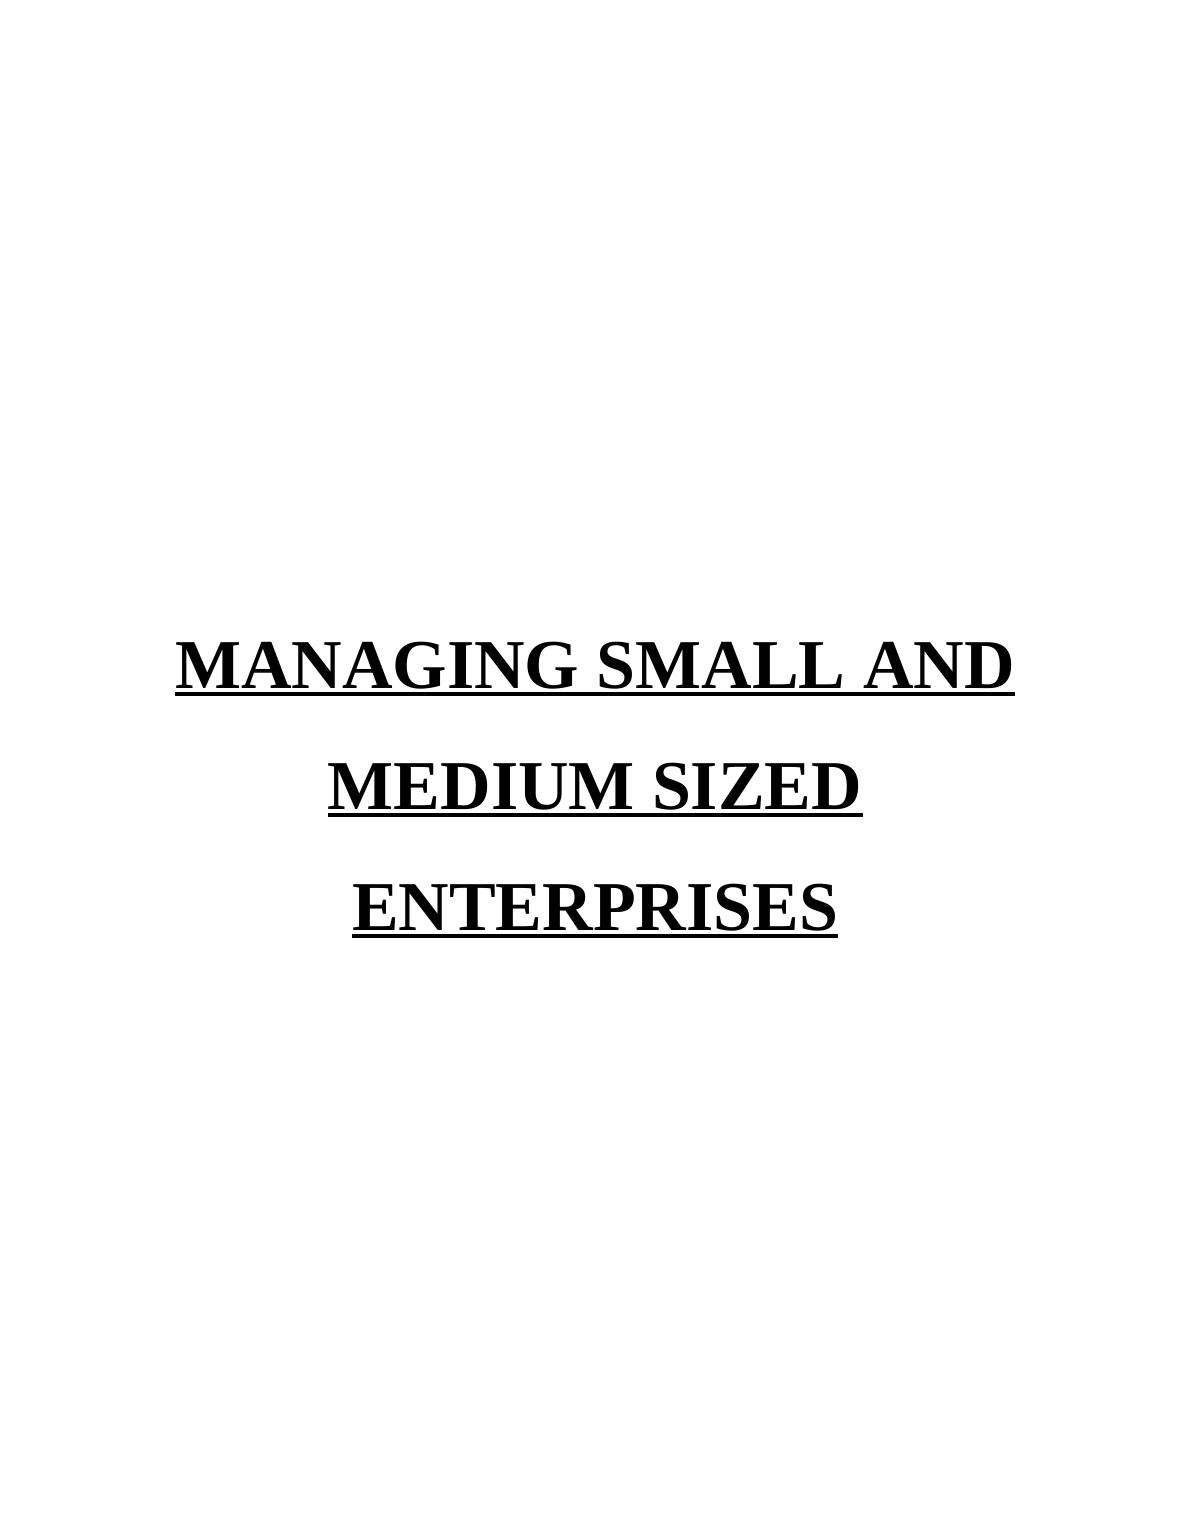 Managing small & medium sized enterprises assignment_1